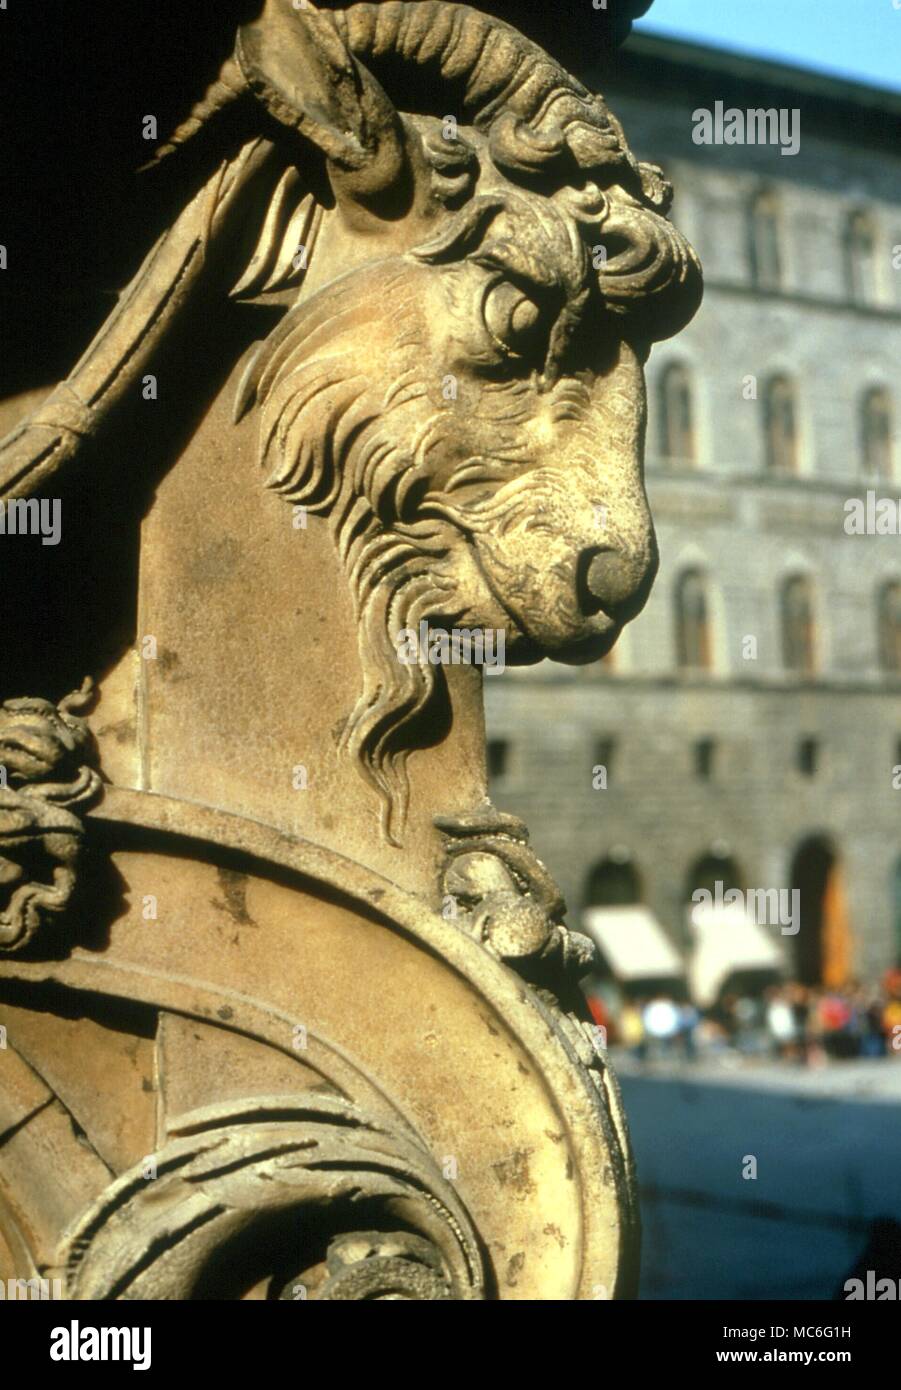 Tête de chèvre sur le stand de Cellini's 'Perseus' dans la Loggia, Florence. Au début du 16e siècle. Banque D'Images